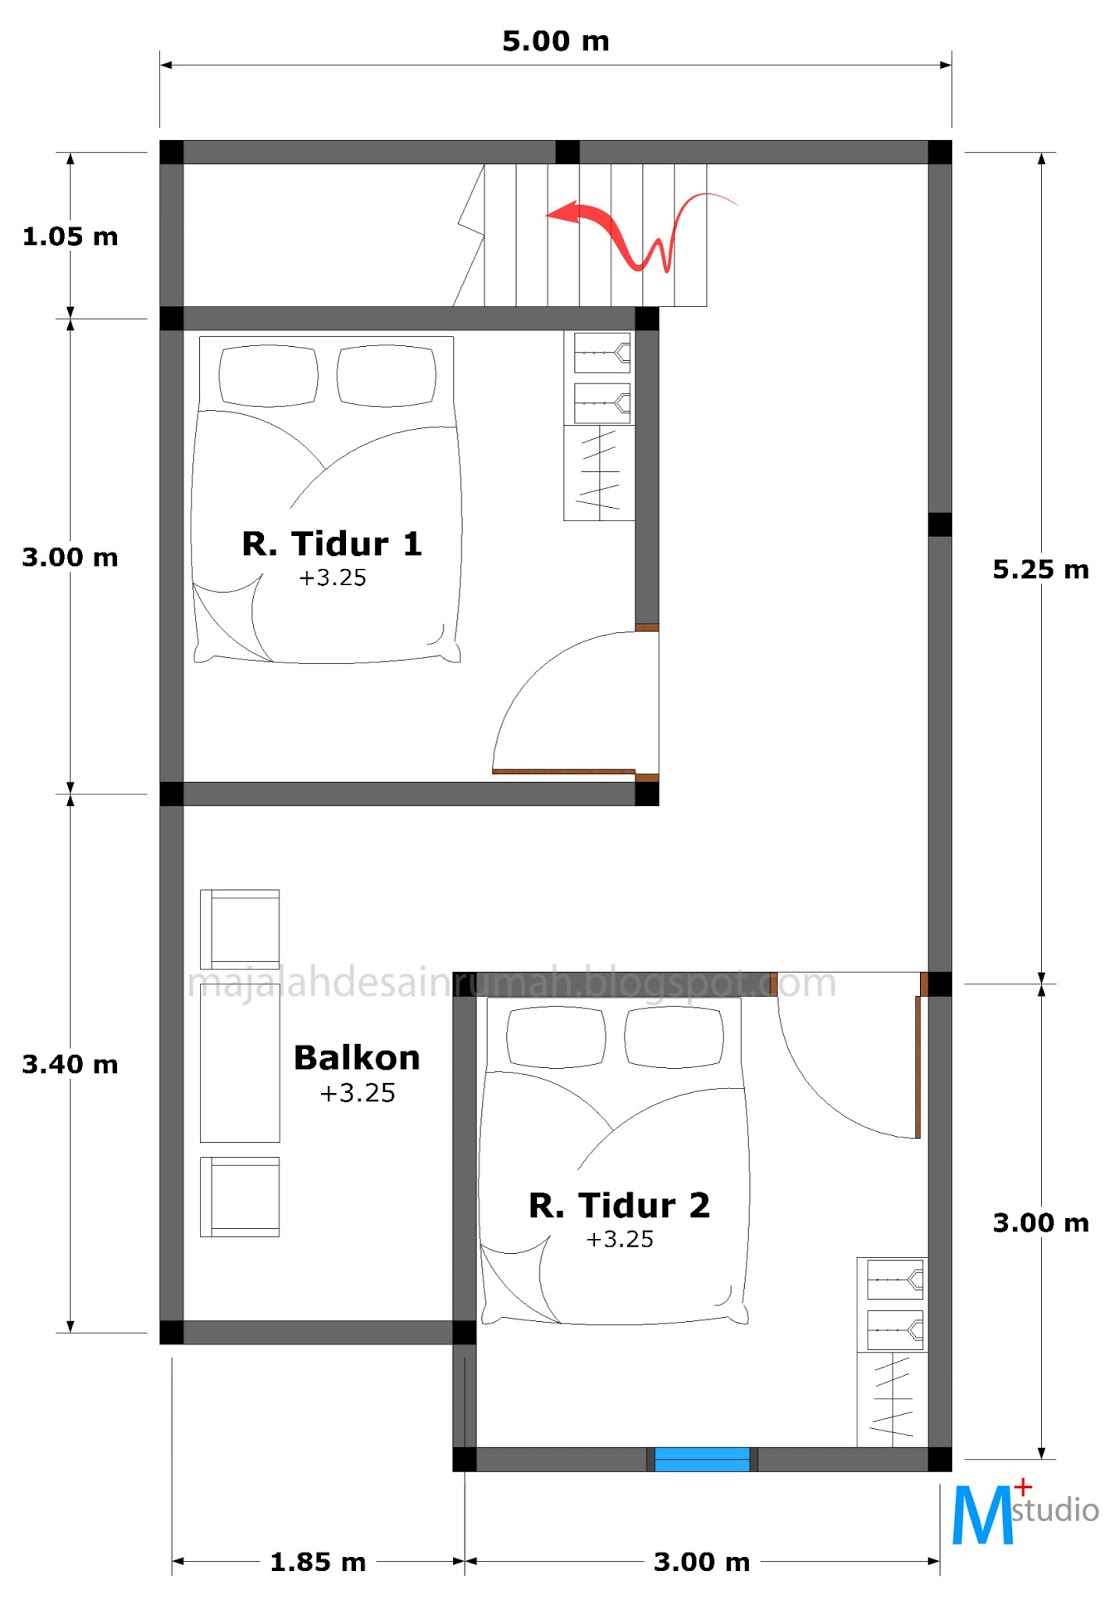 Desain Rumah Ukuran 6x9 Meter - Contoh Z